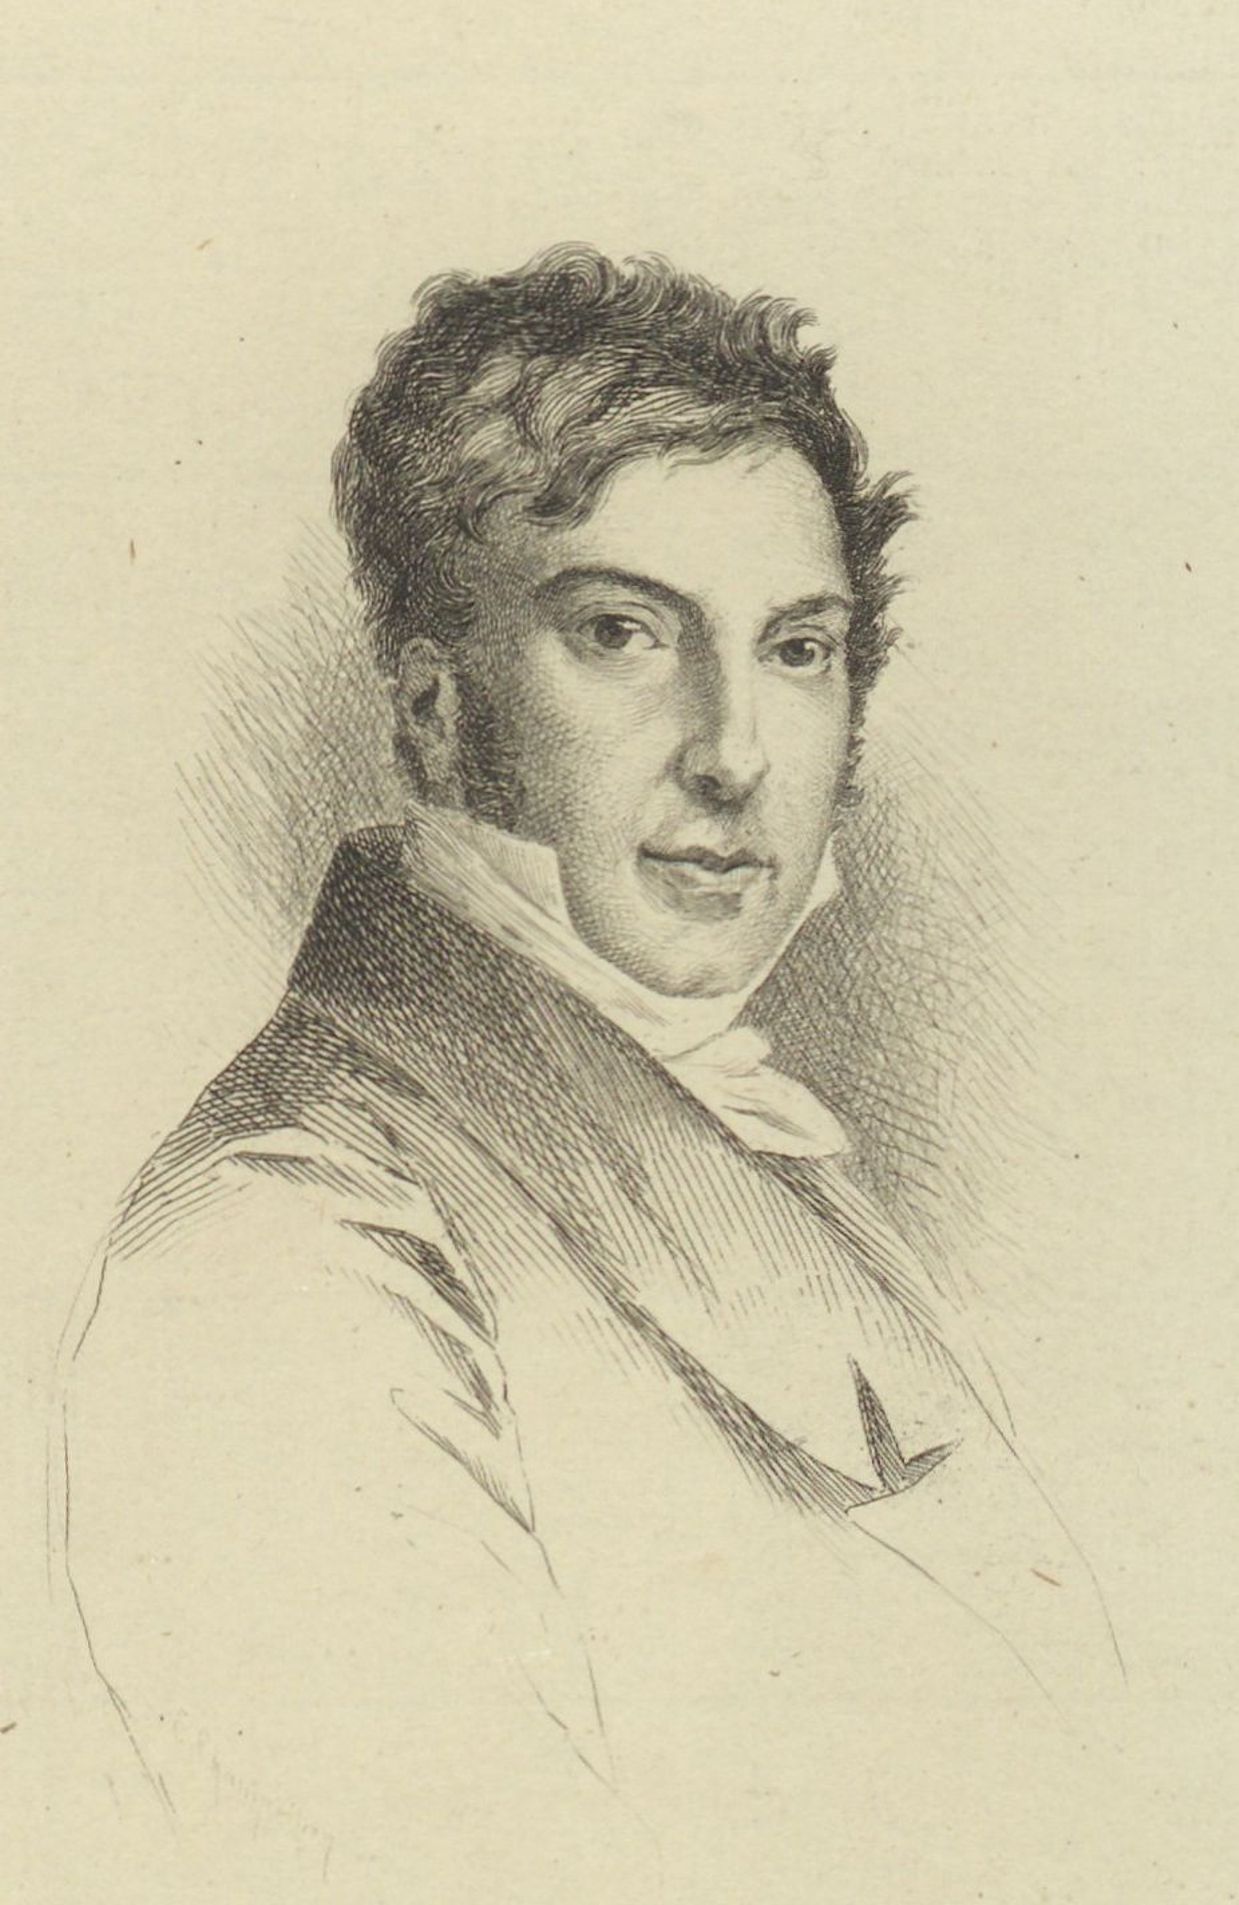 Portrait de Jean-François Champollion en 1824